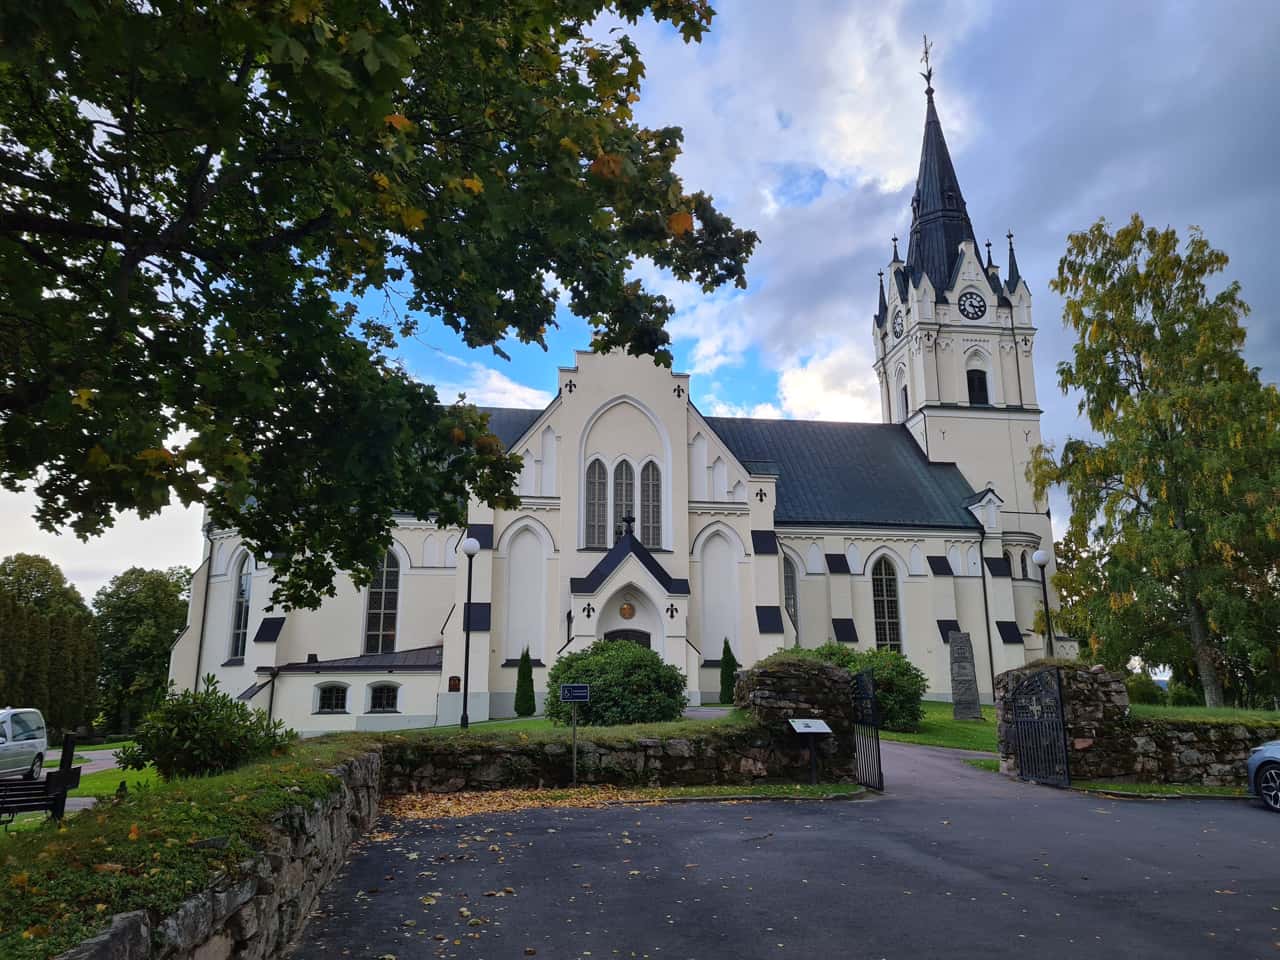 die Kirche von Sunne in der schwedischen Provinz Värmland